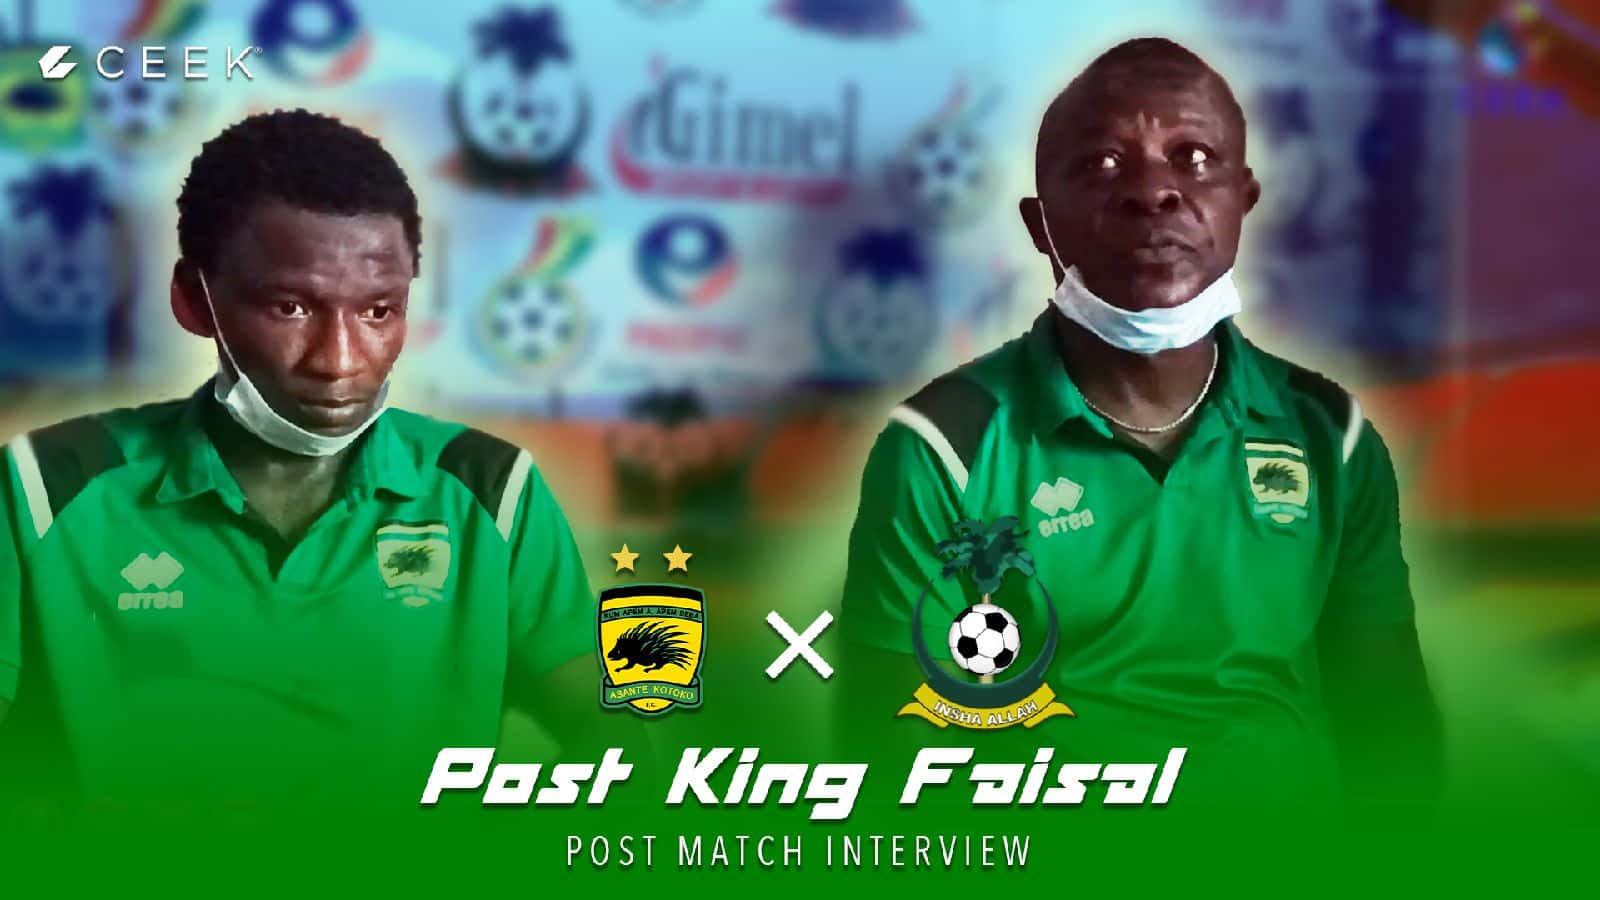 Post match interview vrs King Faisal